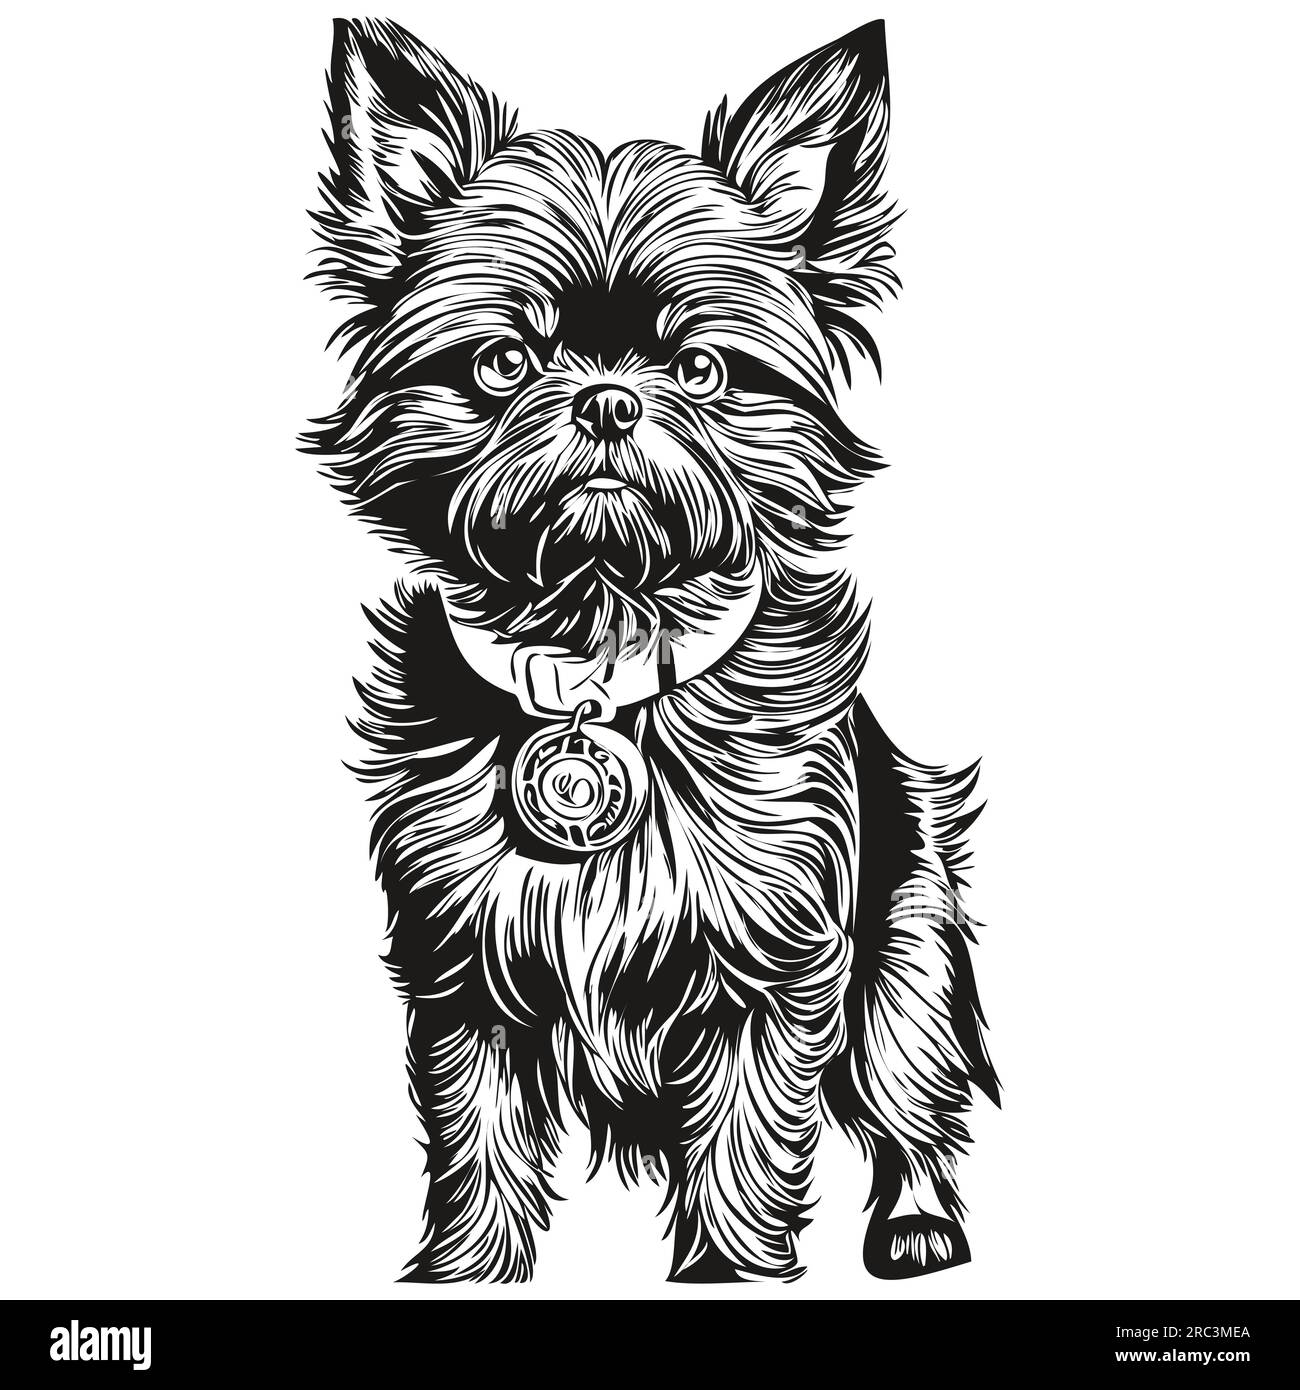 Affenpinscher chien dessin animé portrait d'encre de visage, dessin d'esquisse noir et blanc, tshirt imprimé silhouette réaliste d'animal de compagnie Illustration de Vecteur